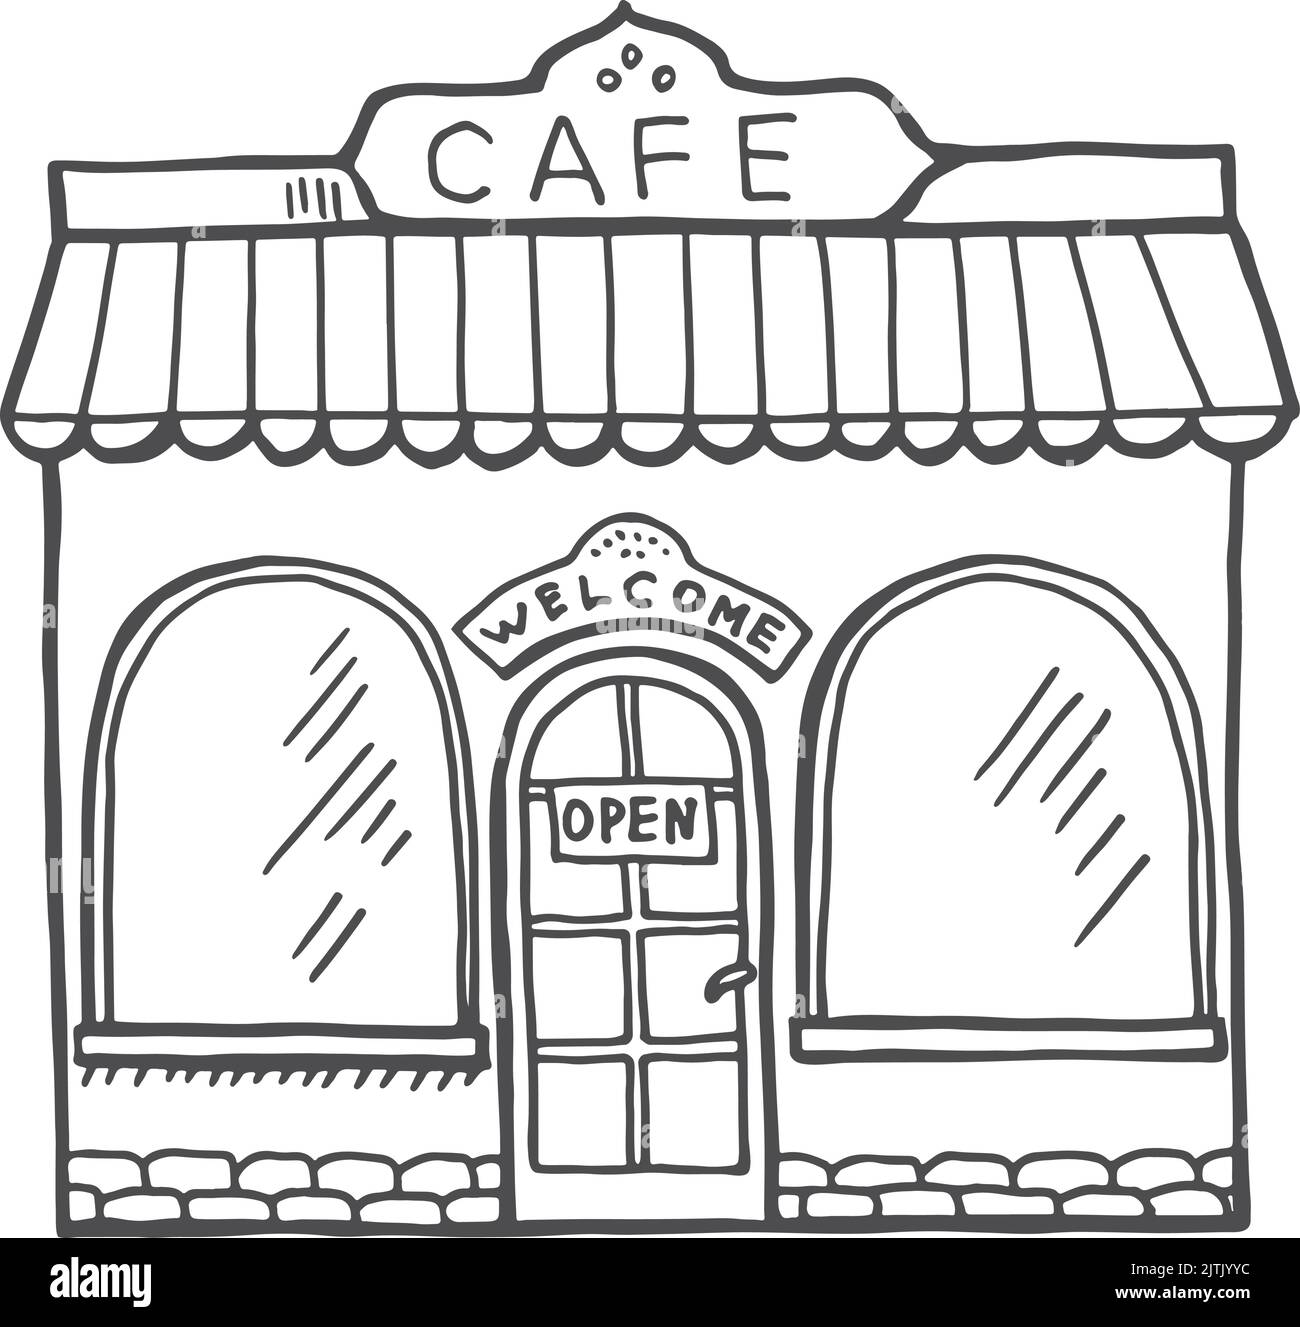 Cafe exterior sketch. Hand drawn building facade Stock Vector